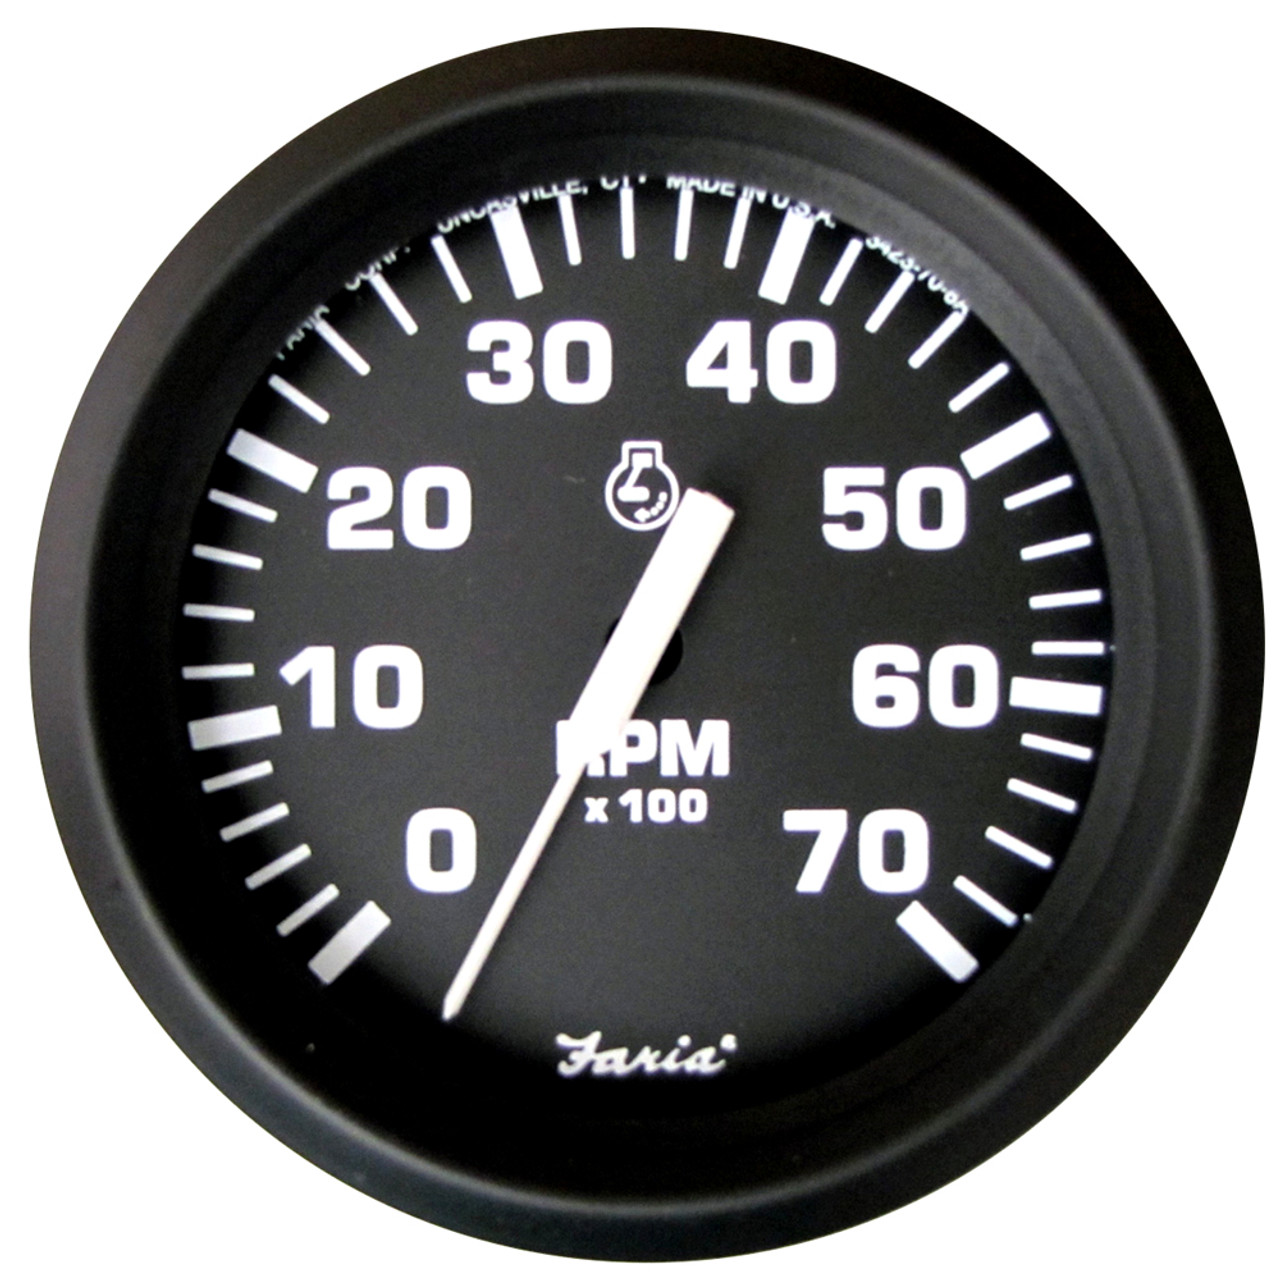 Faria Euro Black 4" Tachometer - 7,000 RPM (Gas - All Outboard)